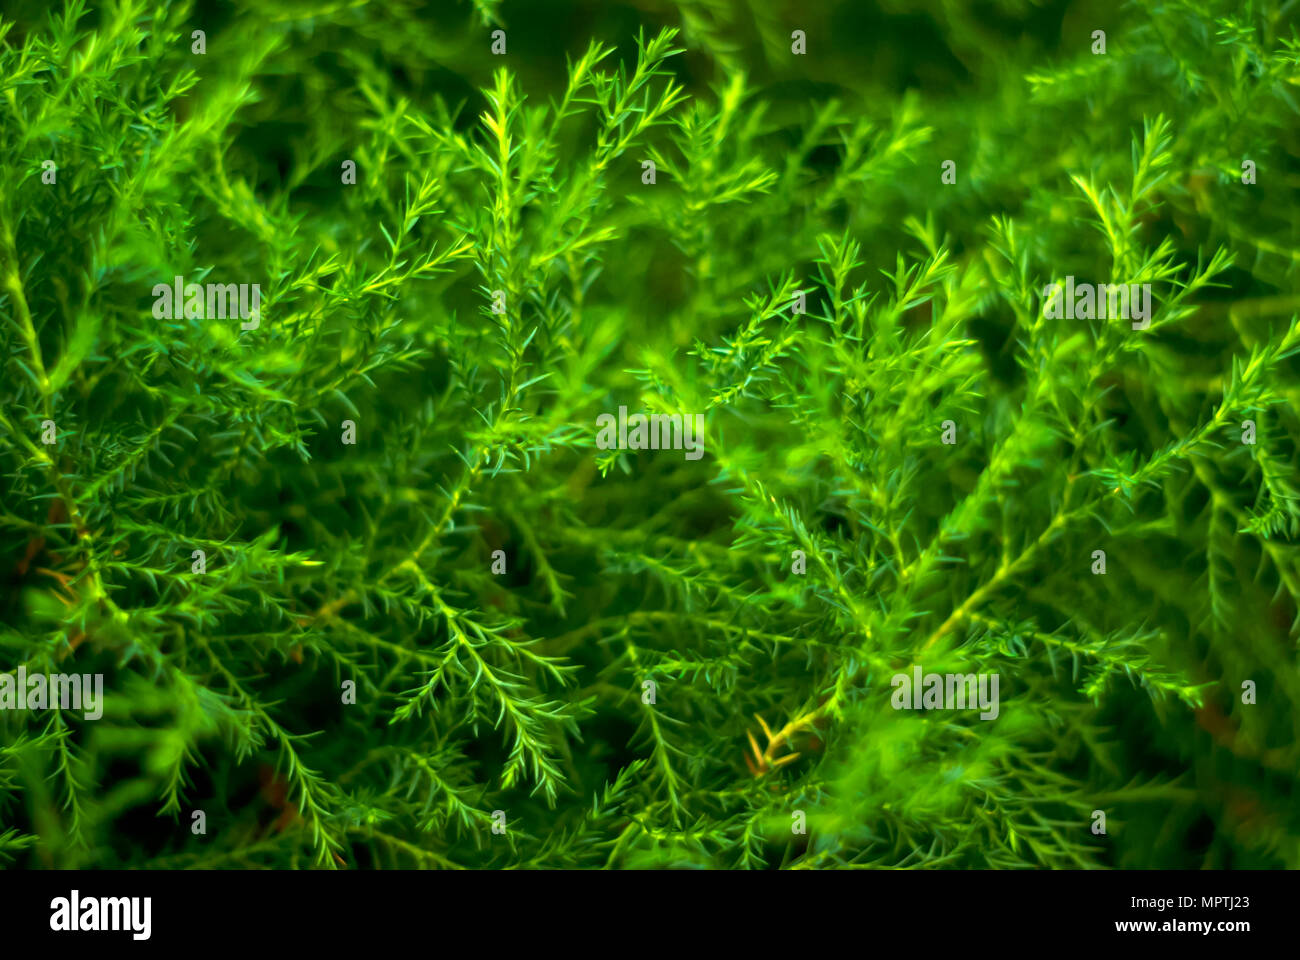 Verschwommenes grün Abstrakt floral background der natürlichen Zweige von tropischen Pflanzen mit winzigen Blätter, erinnert an Spargel oder Algen Stockfoto